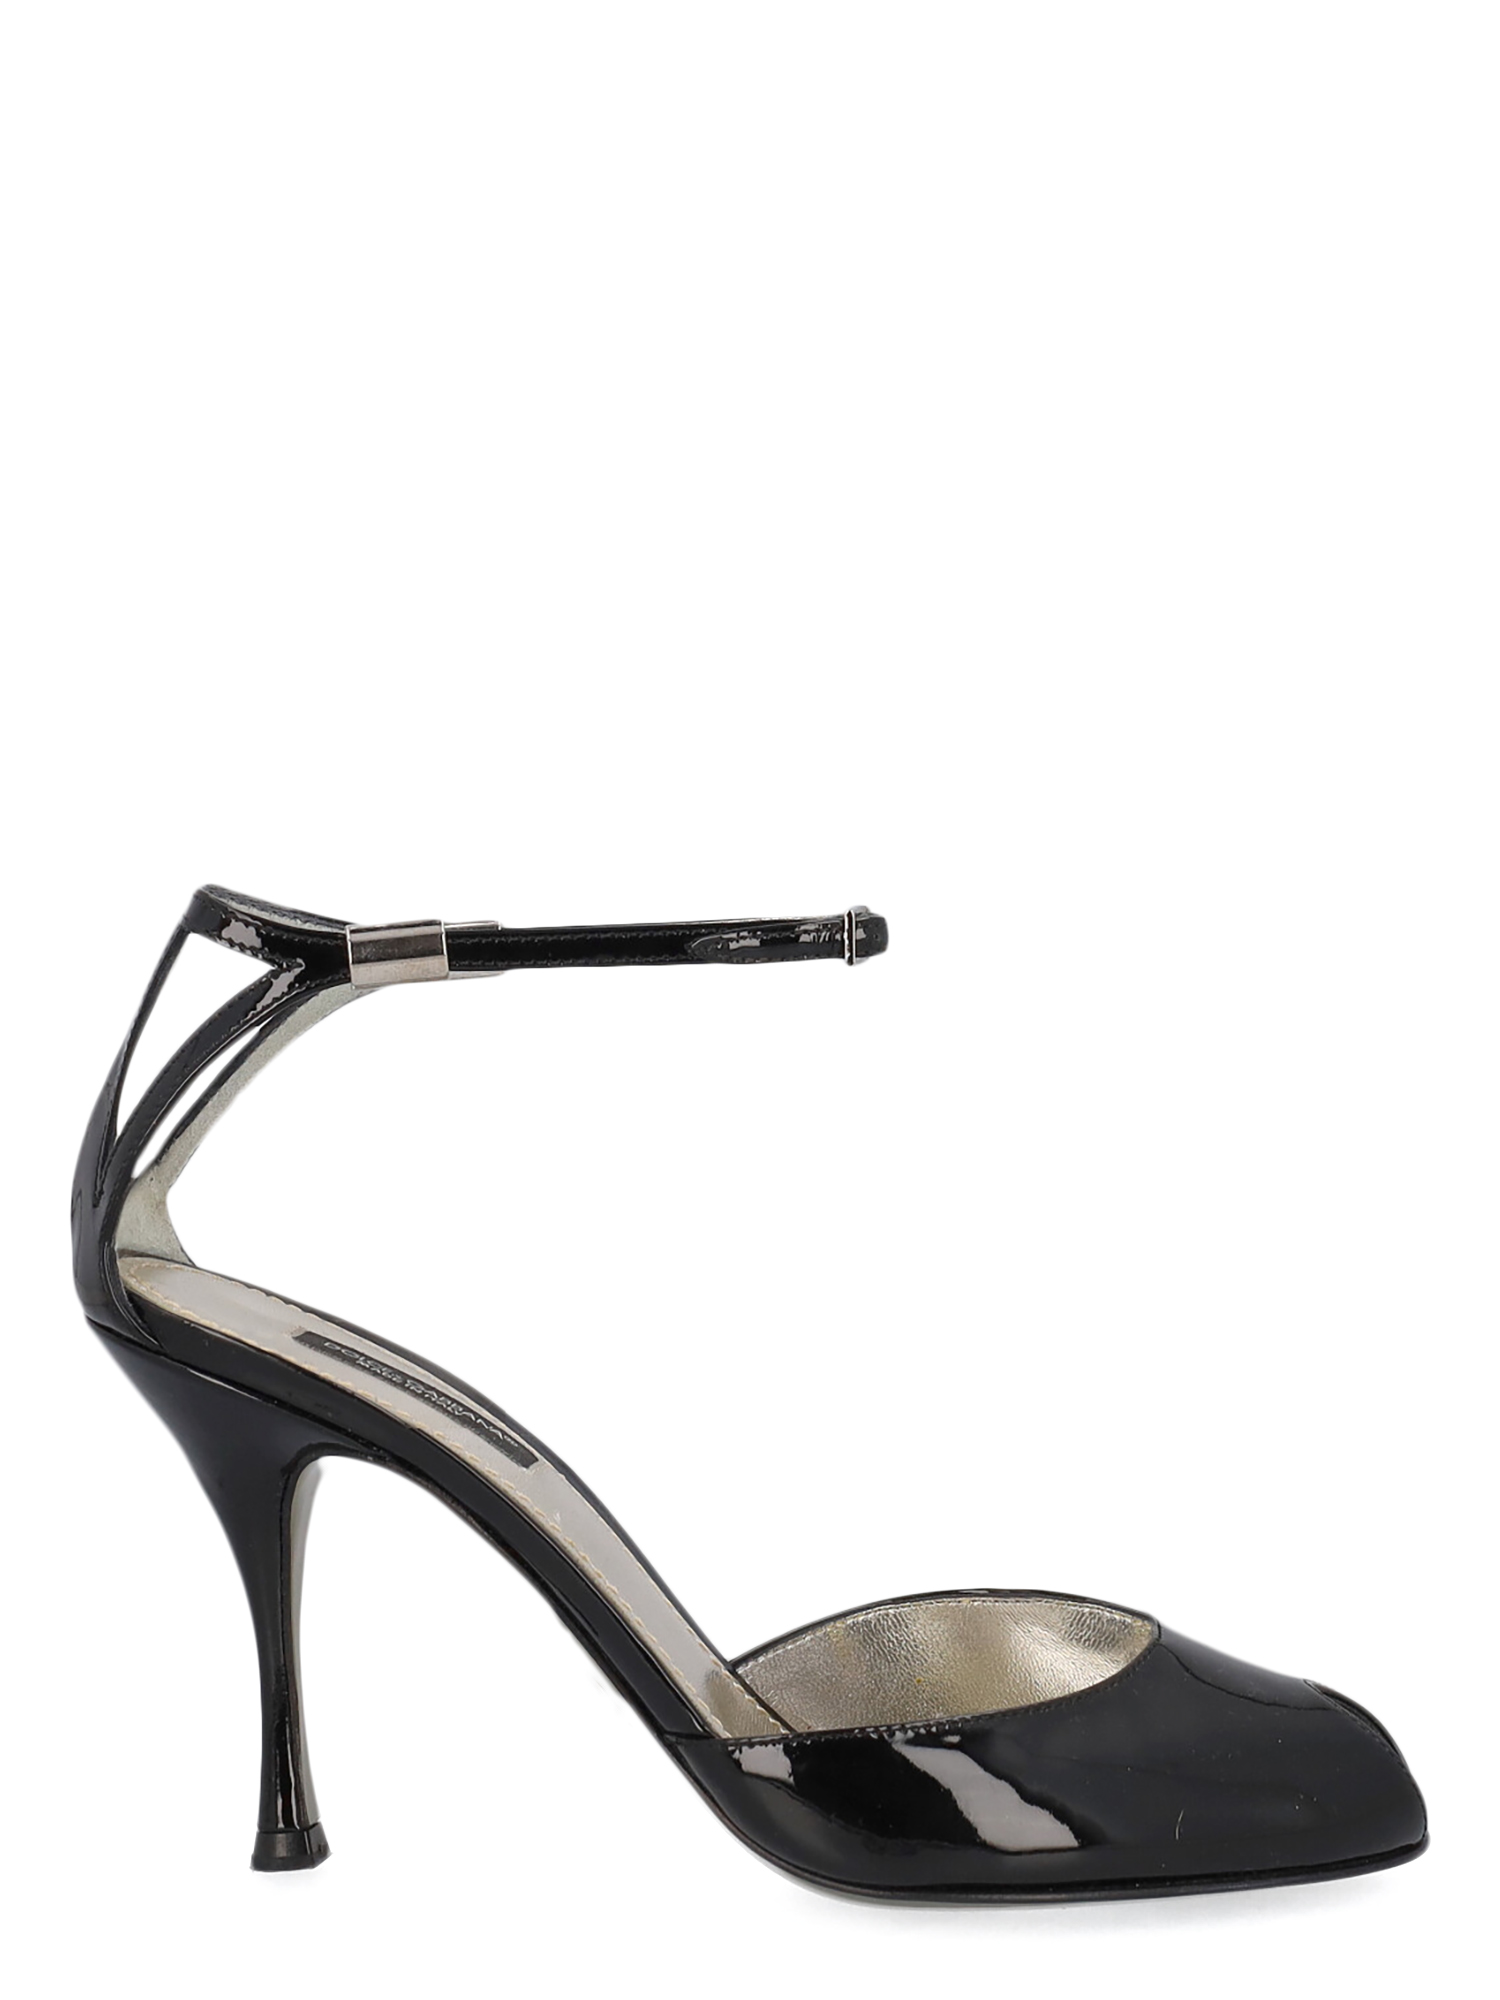 Sandales Pour Femme - Dolce & Gabbana - En Leather Black - Taille: IT 36 - EU 36